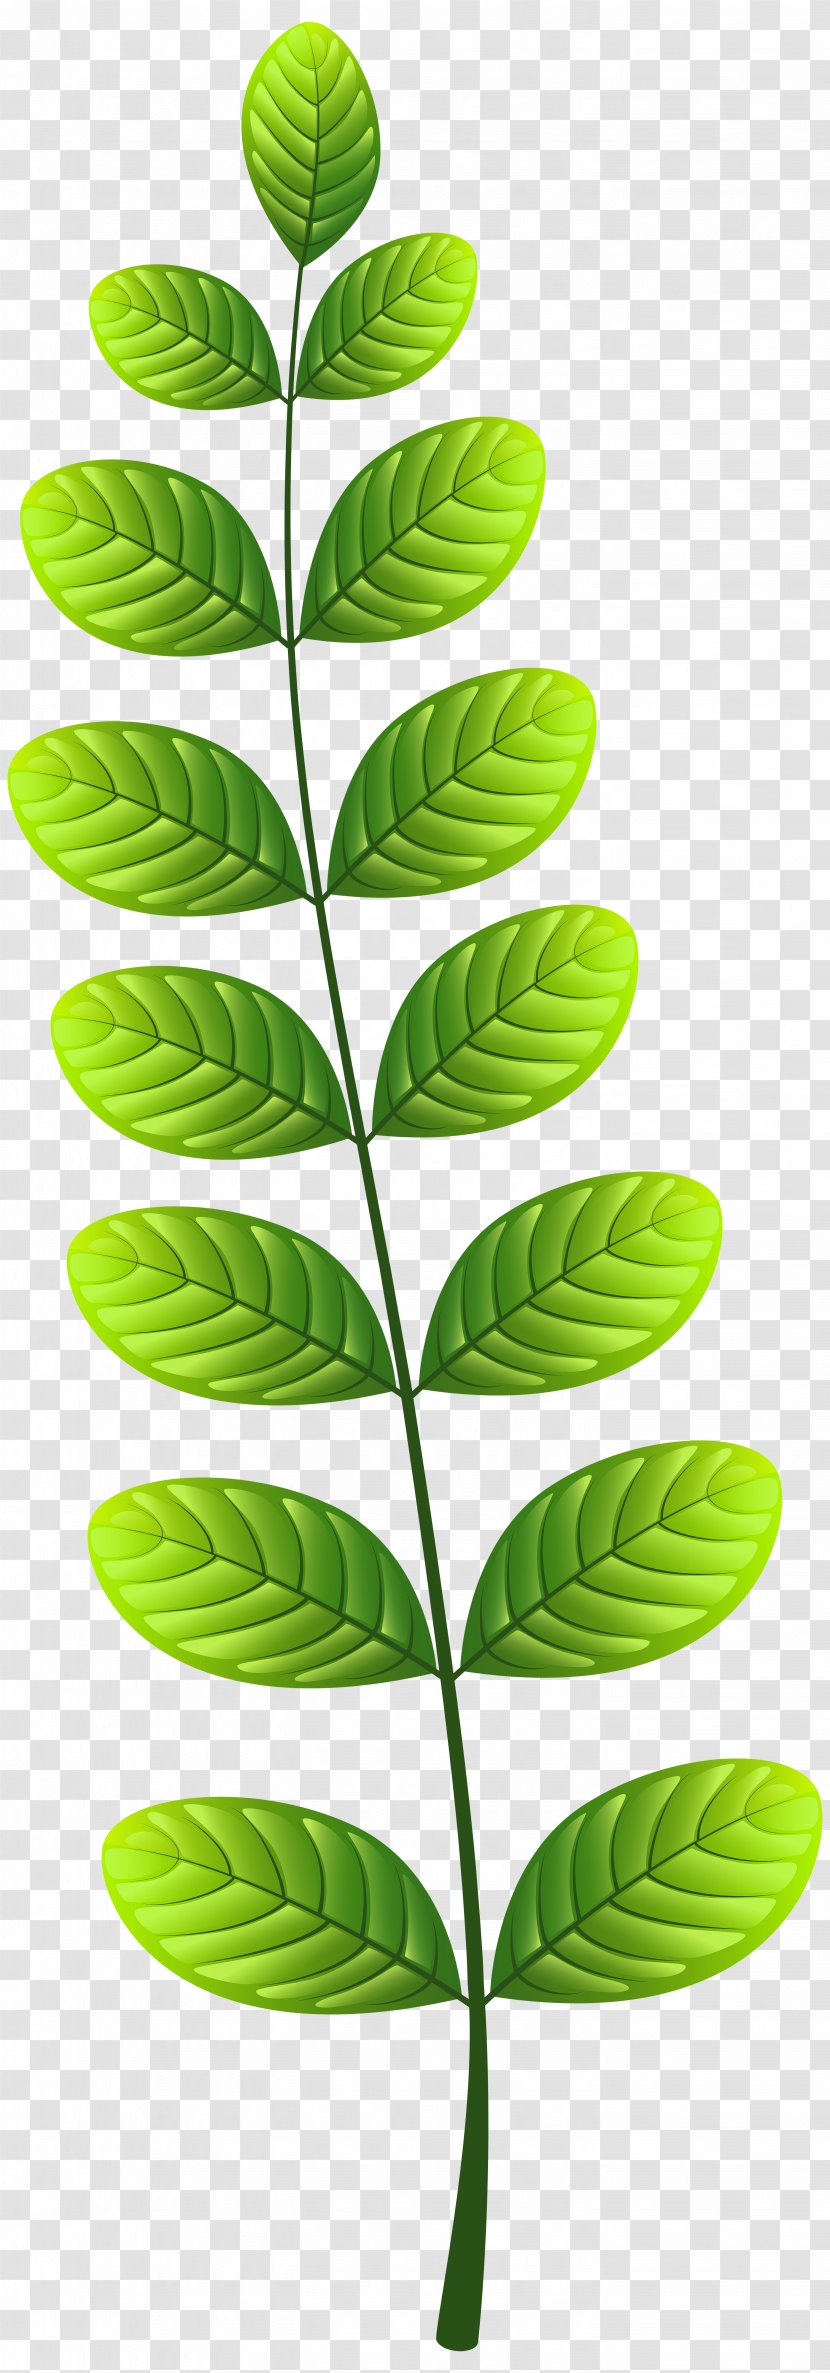 Leaf Clip Art - Organism Transparent PNG